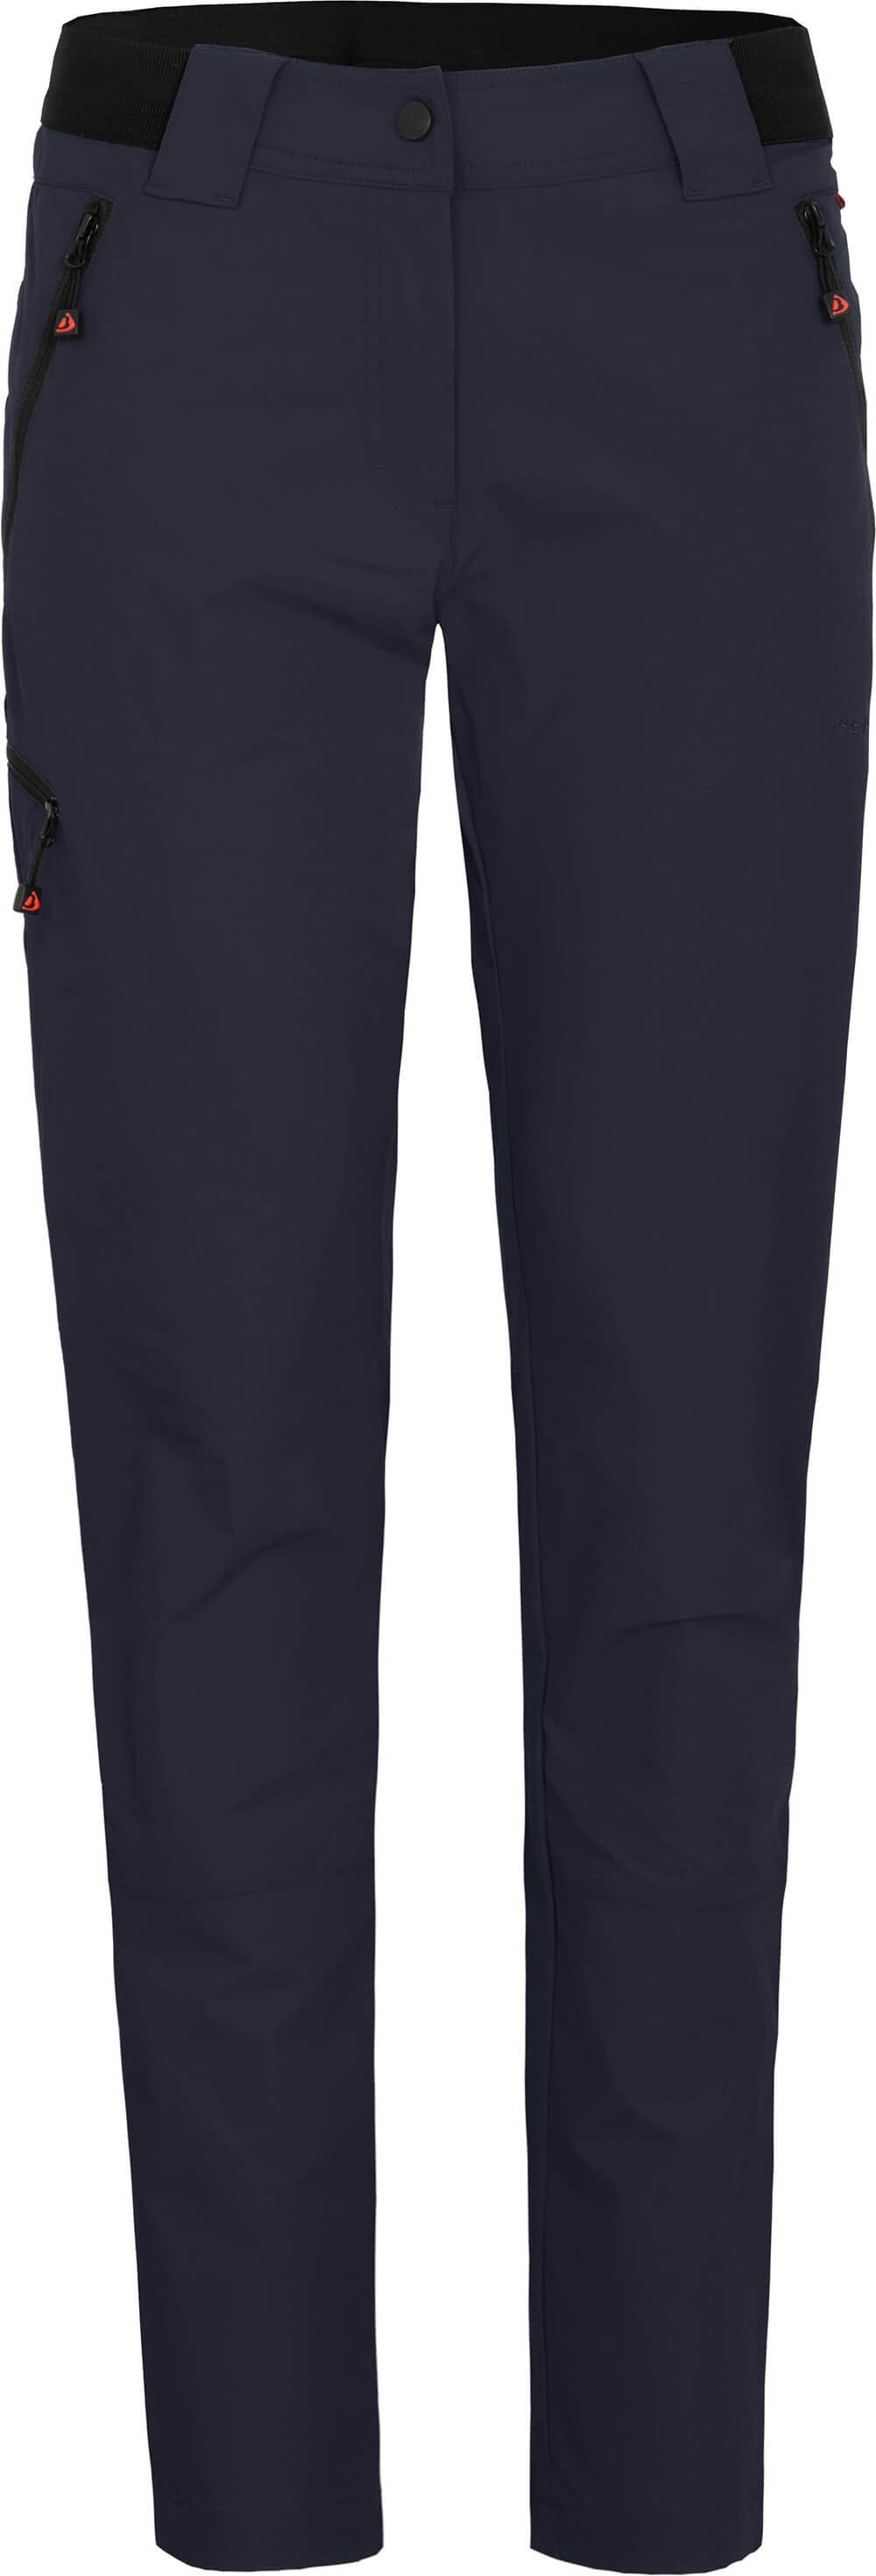 Bergson Outdoorhose »VIDAA COMFORT (slim)« Damen Wanderhose, leicht,  strapazierfähig, Kurzgrößen, Nacht blau online kaufen | OTTO